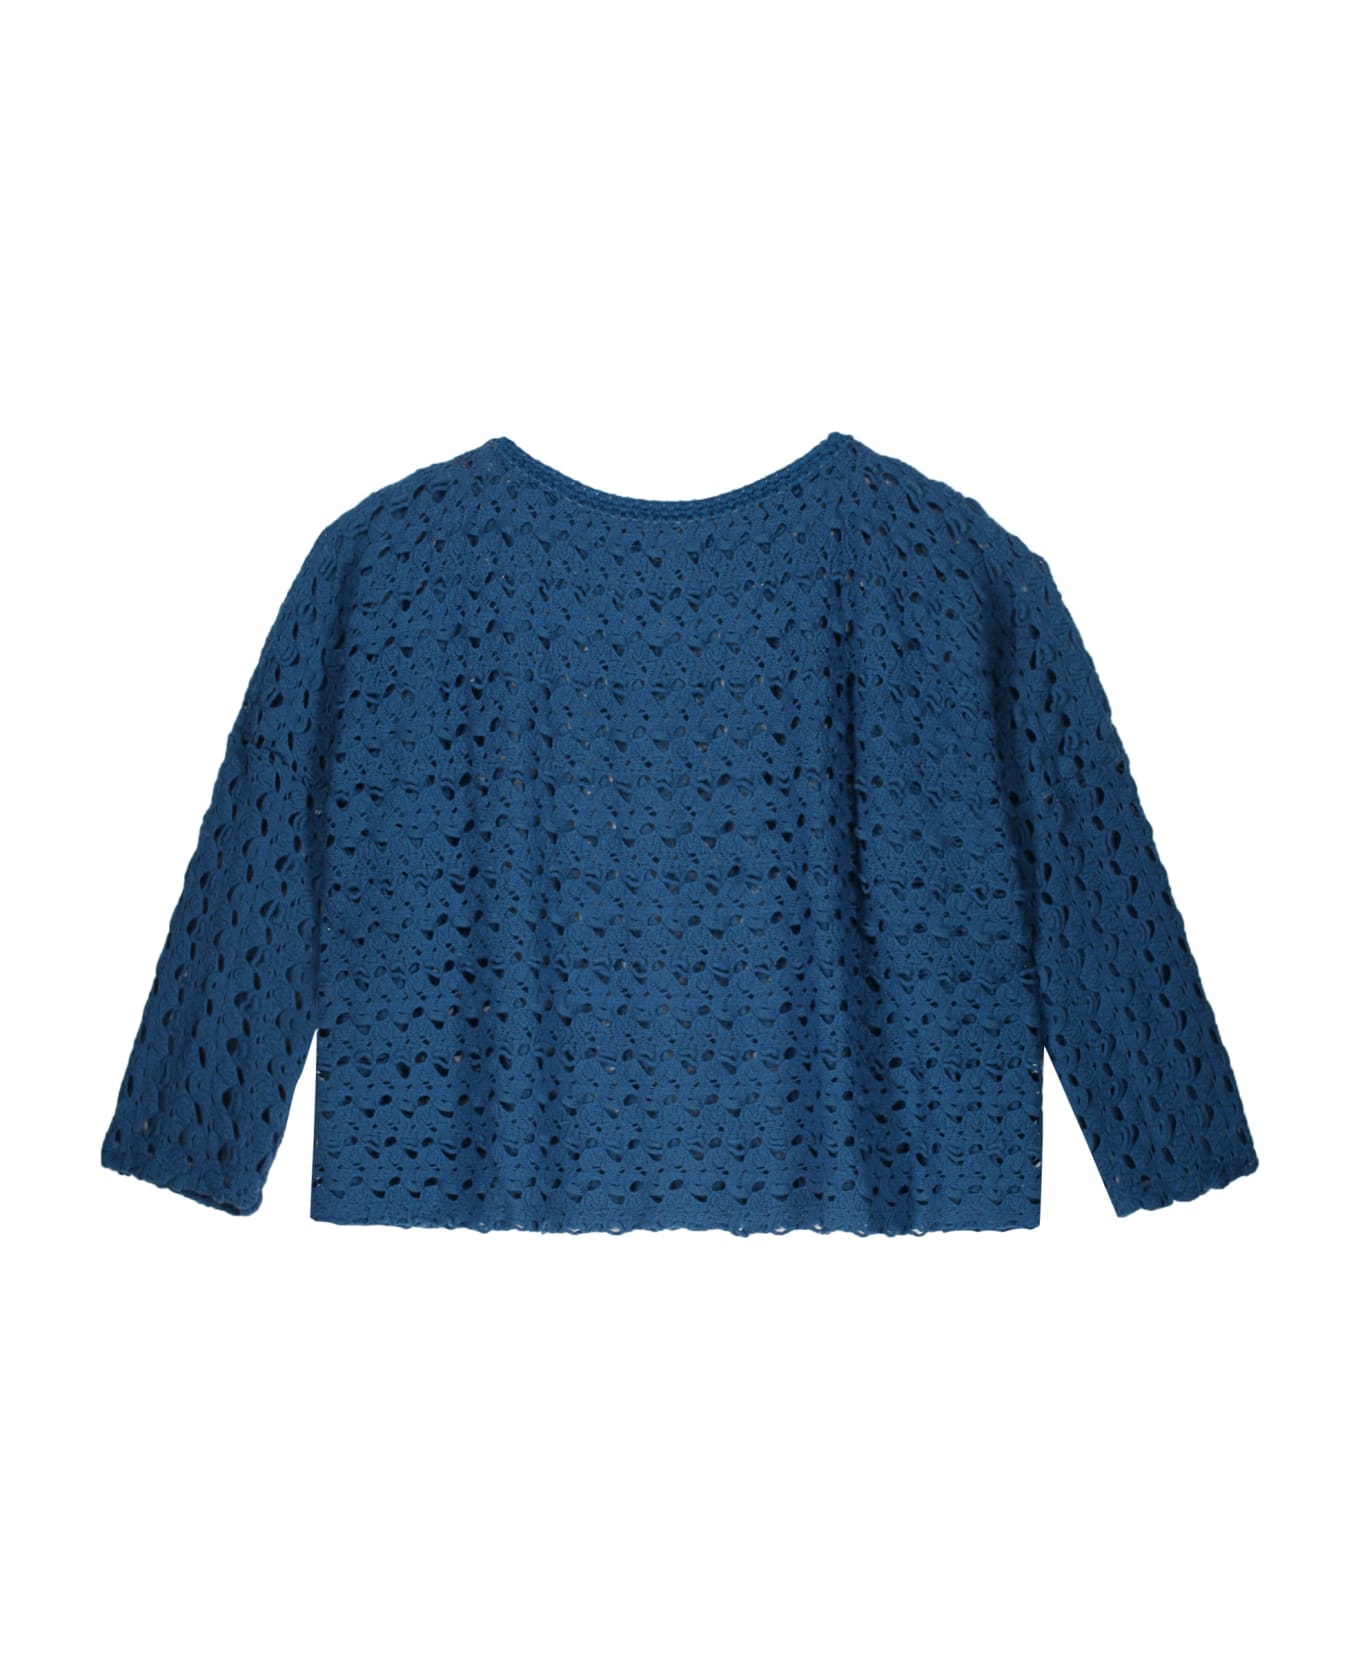 M Missoni Wool Blend Sweater - blue